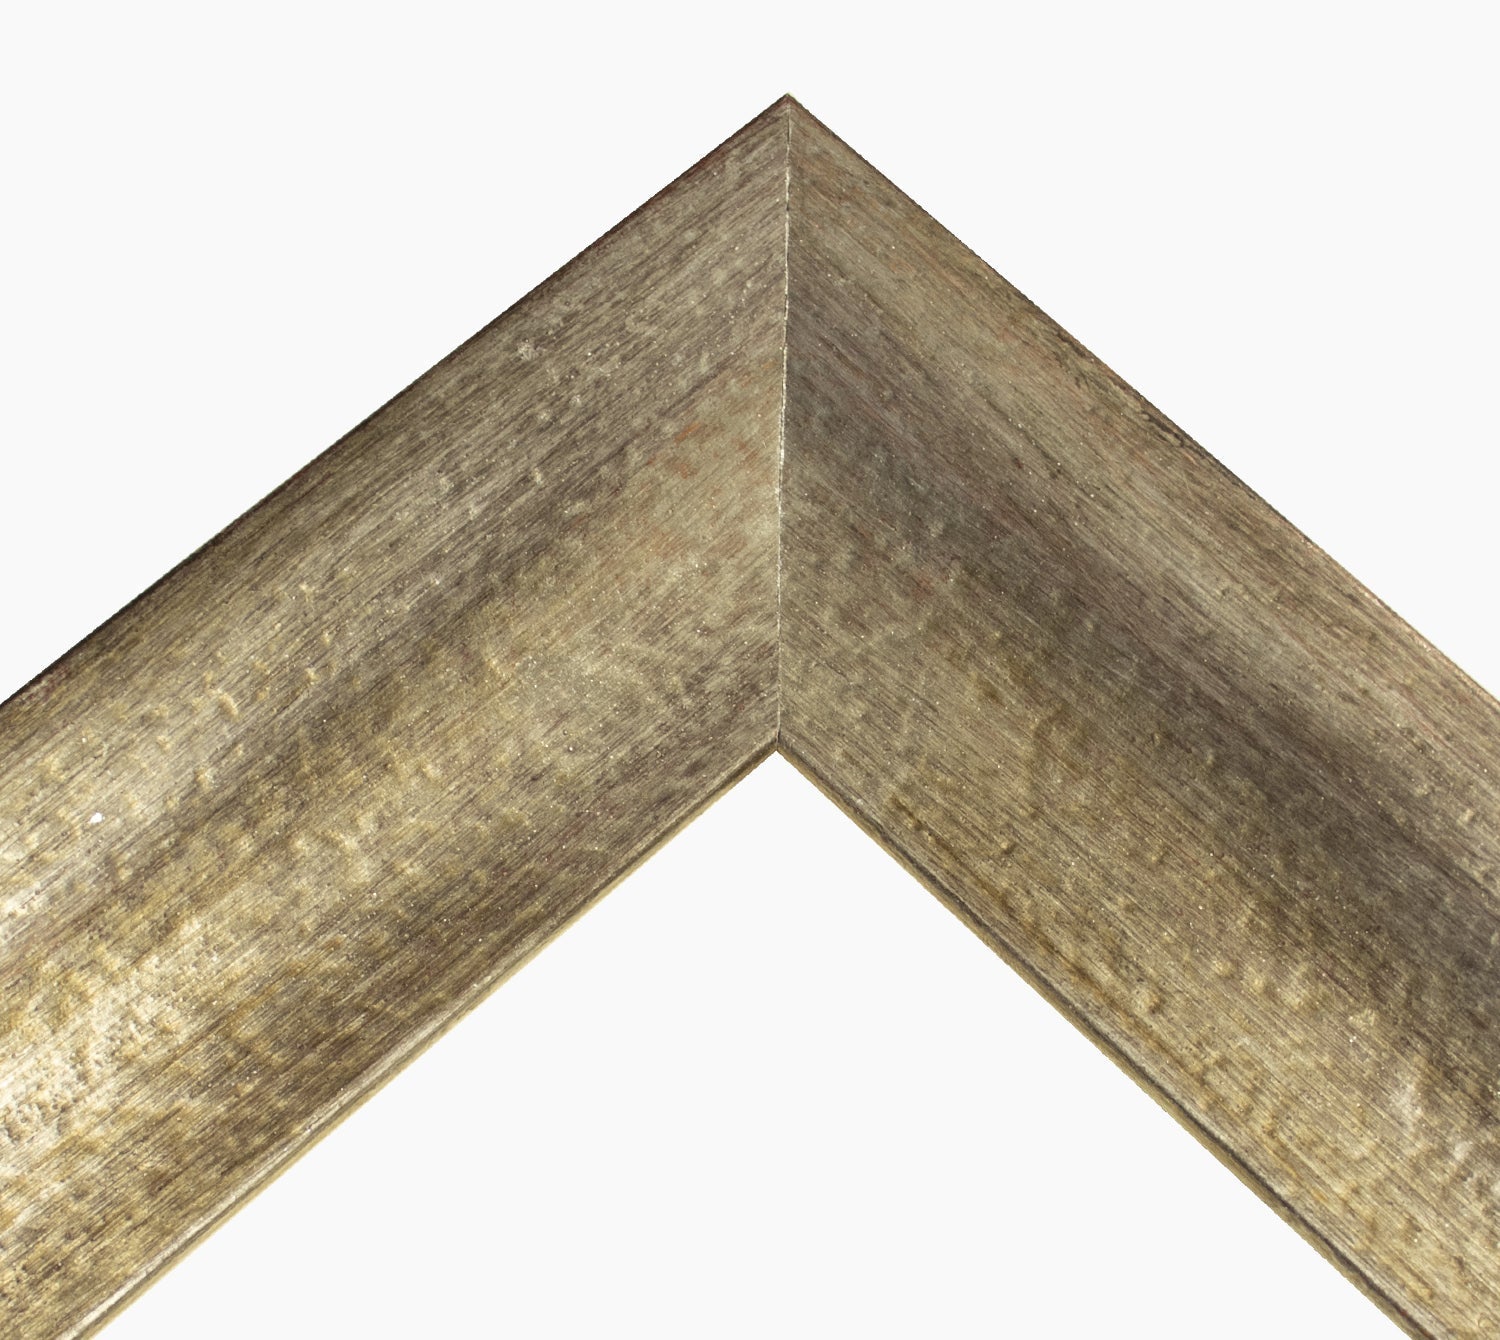 345.231 cadre en bois à la feuille d'argent antique mesure de profil 60x45 mm Lombarda cornici S.n.c.